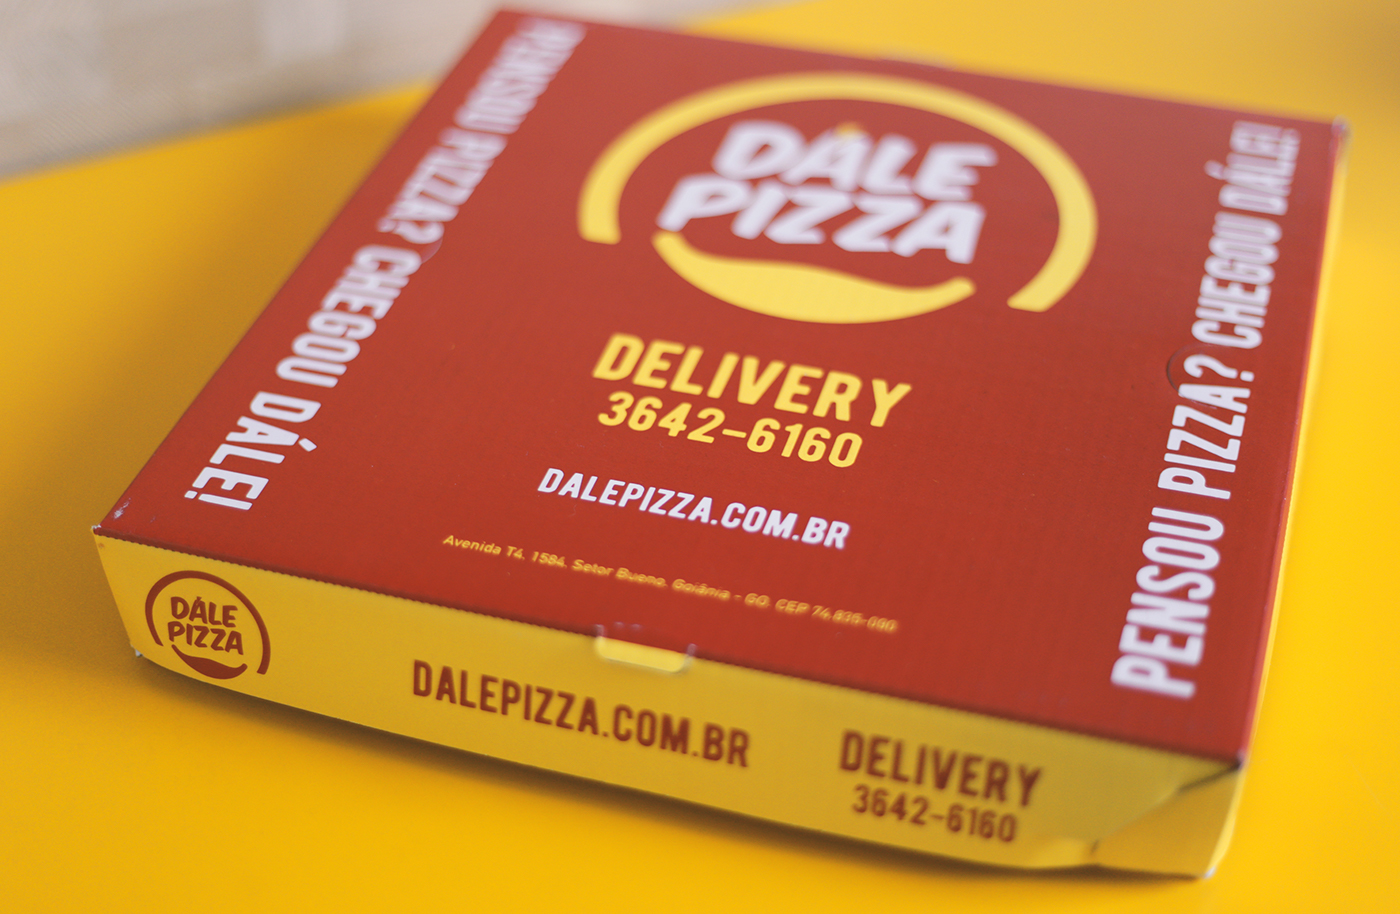 Pizza pizzaria naming marca estudo posicionamento PDV Inauguração. brand Dále Pizza Marca Pizza alimento identidade visual